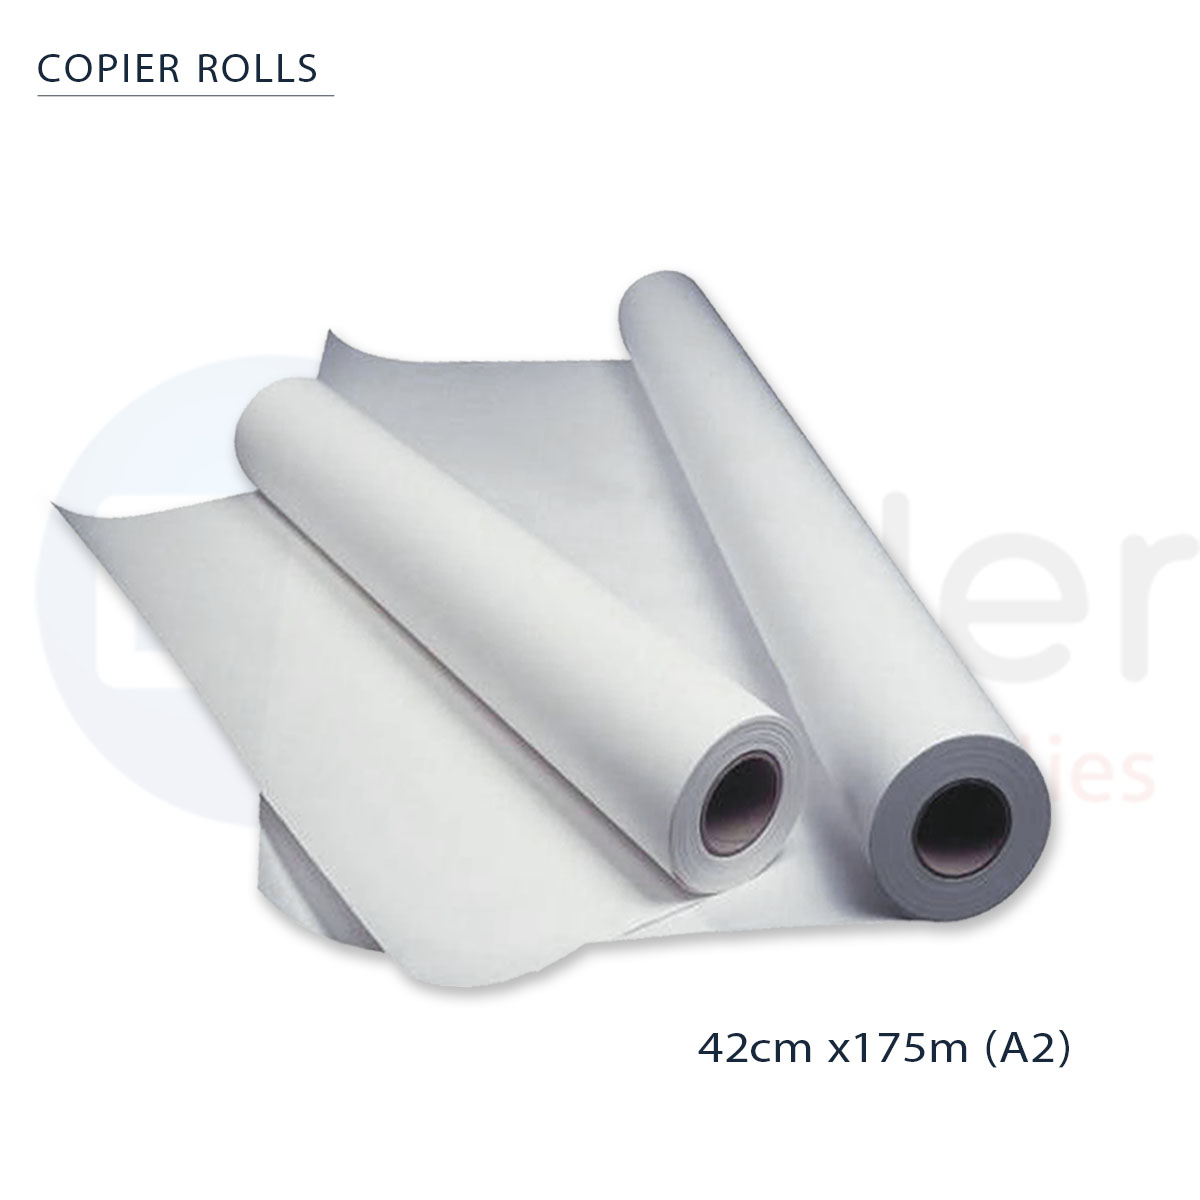 Copier Roll A2 (42cmx175m) KANGAS,